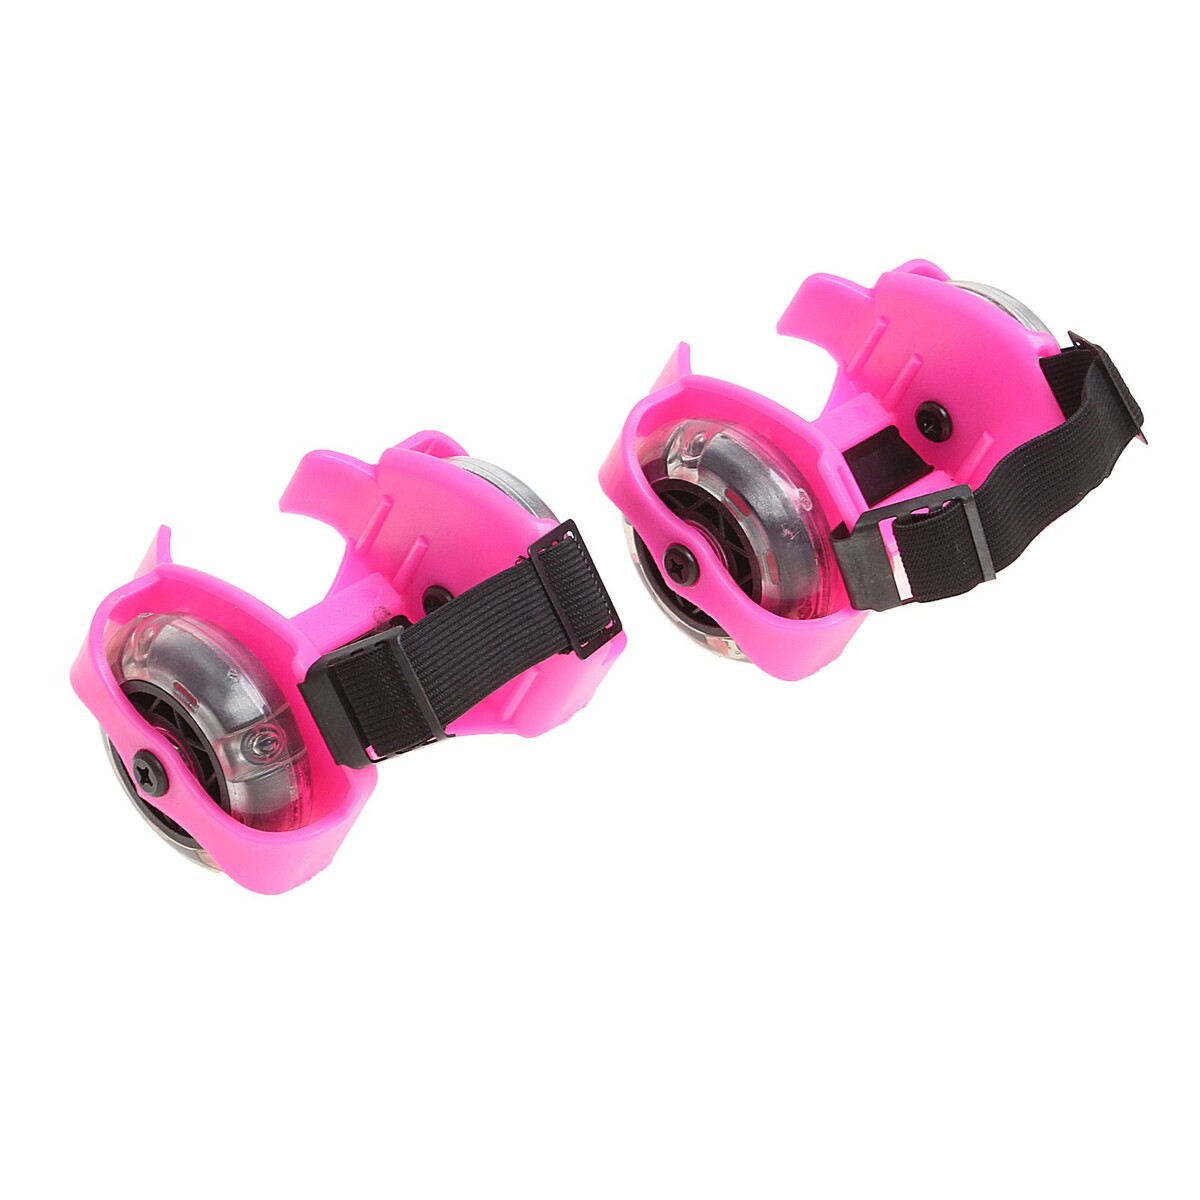 Ролики для обуви раздвижные onlitop, светящиеся колеса рvc 70 мм, ширина 6-10 см, до 70 кг, цвет розовый мини круизер rgx pnb 01gw светящиеся колеса pink